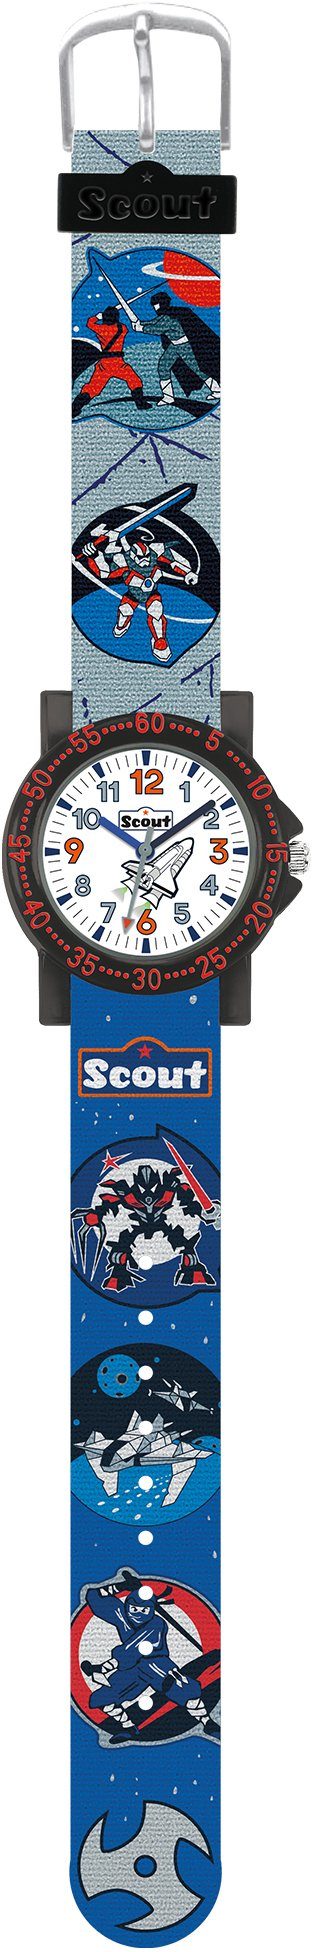 Scout Quarzuhr The IT-Collection, 280375026, Lernuhr, ideal auch als Geschenk | Quarzuhren